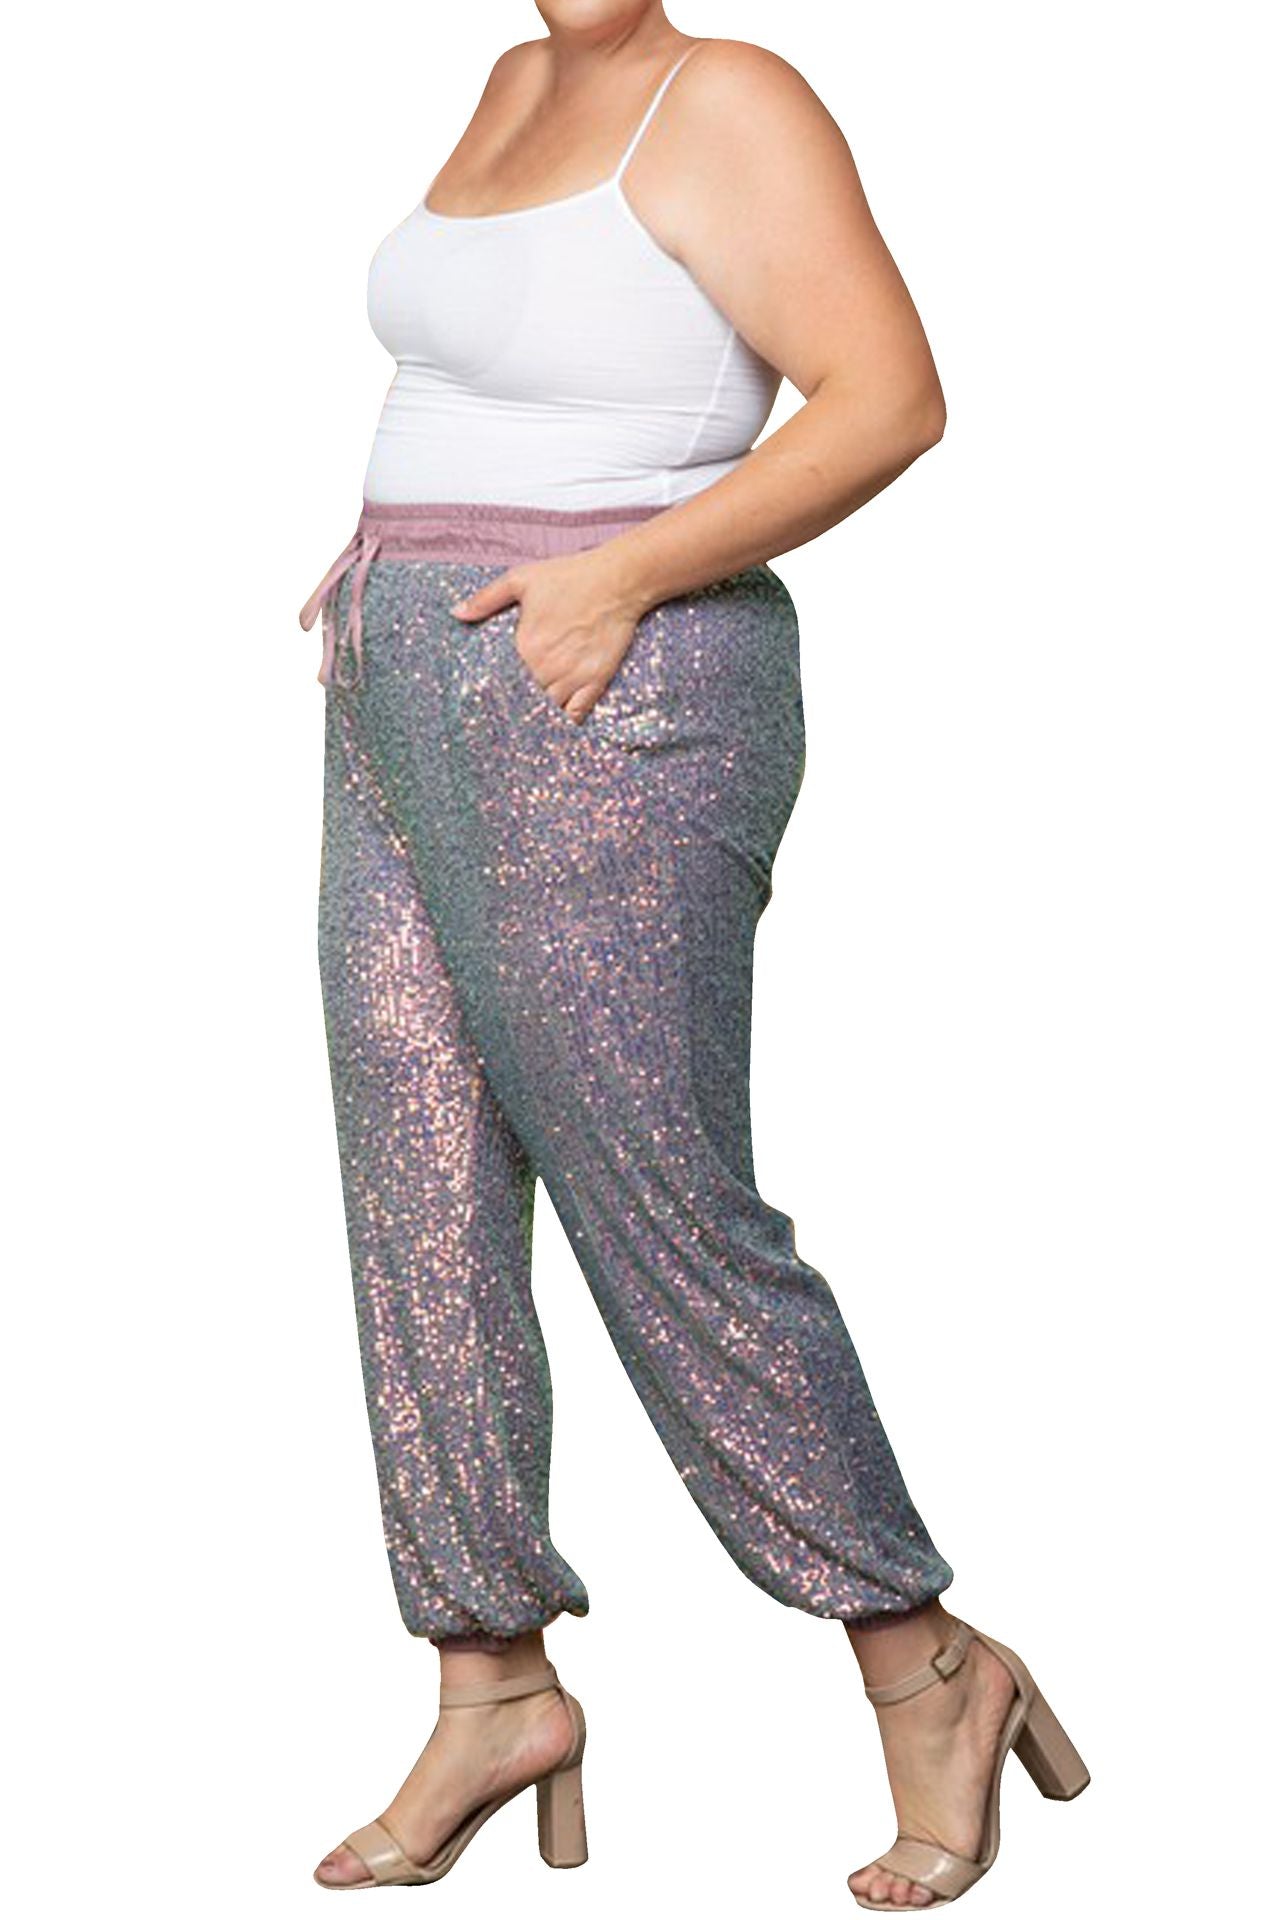 "Kyle X Shahida" "high waist sequin joggers" "jogger sequin pants" "jogger sequin pants" "womens sequin joggers"